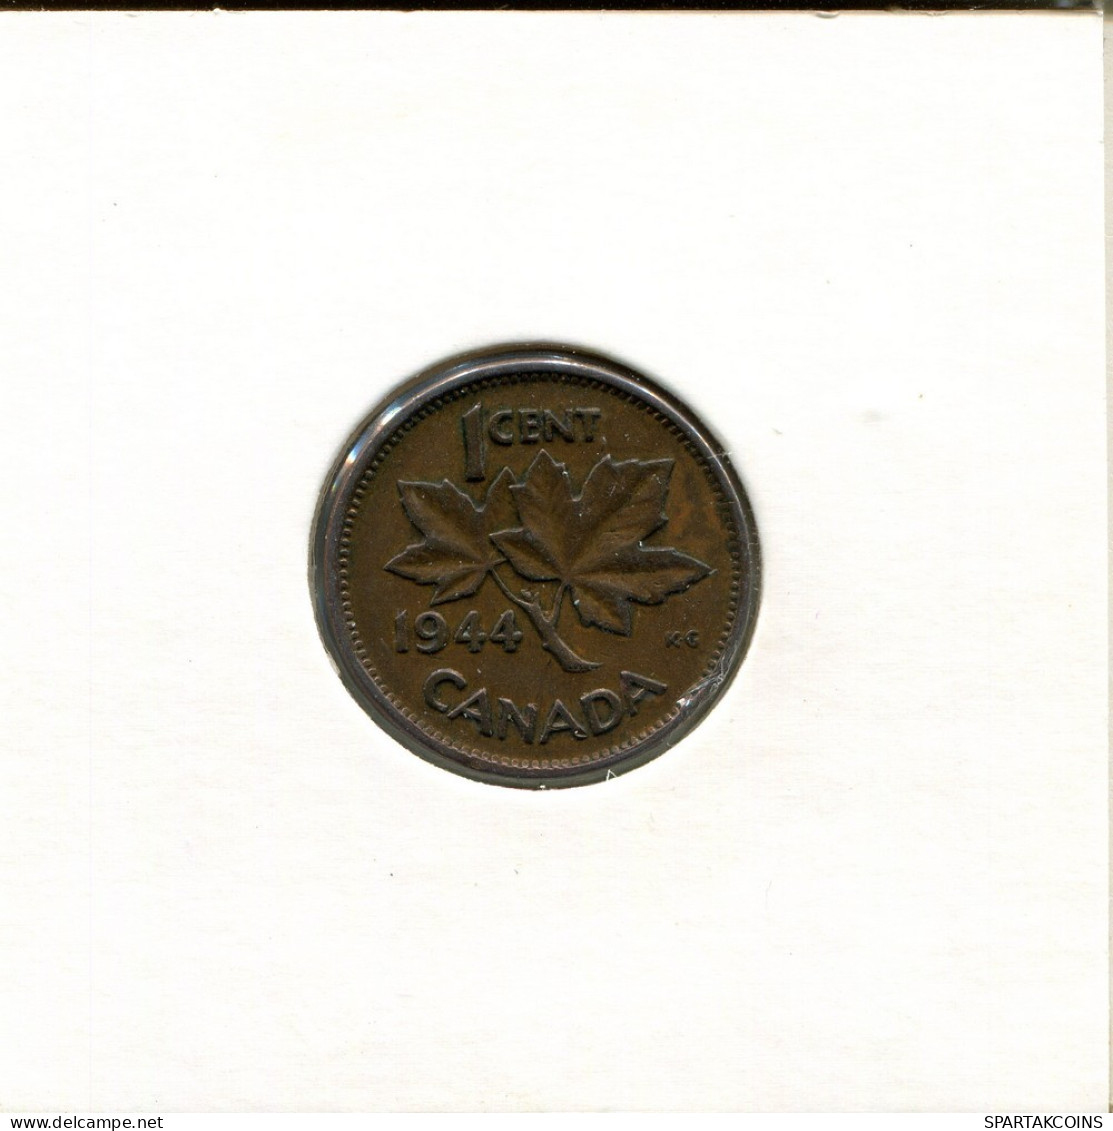 1 CENT 1944 CANADA Coin #AR436.U.A - Canada